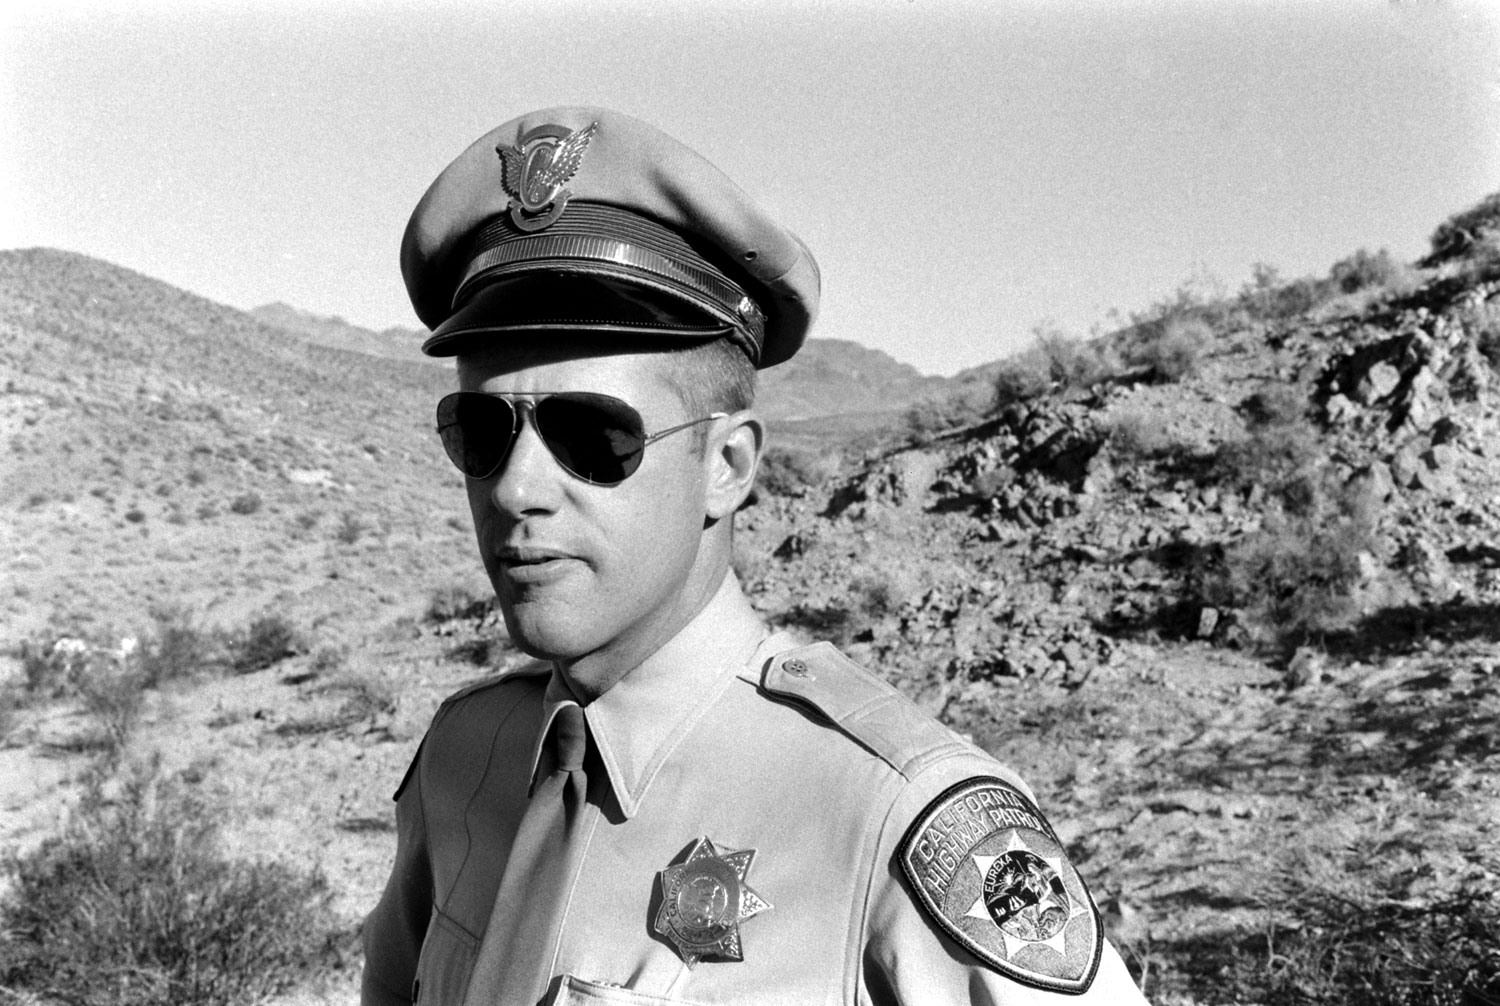 A California Highway Patrolman, Barker Ranch, 1969.